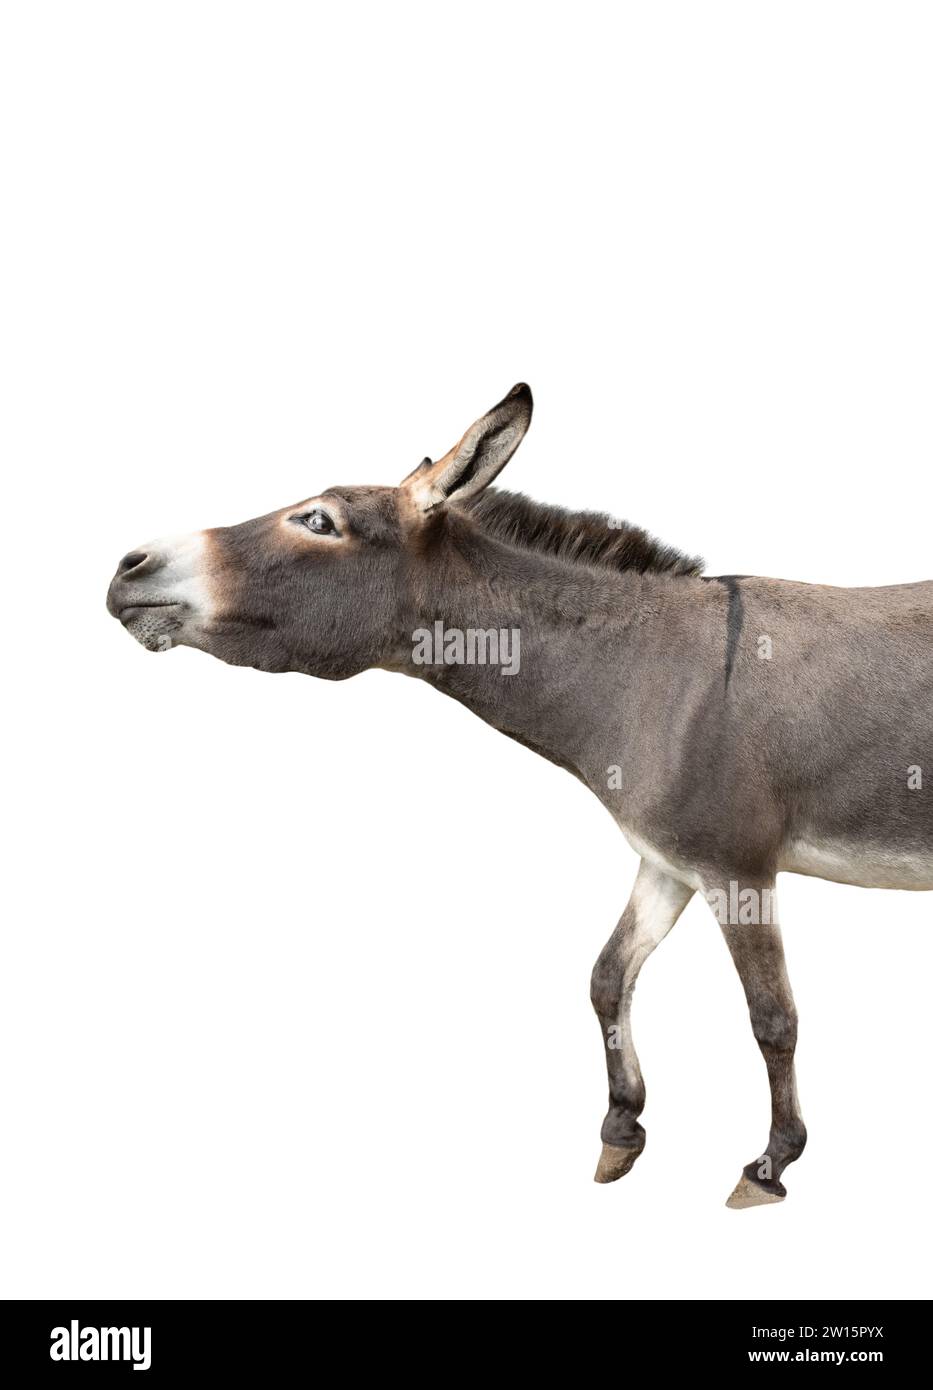 Somali donkey isolated on a white background Stock Photo